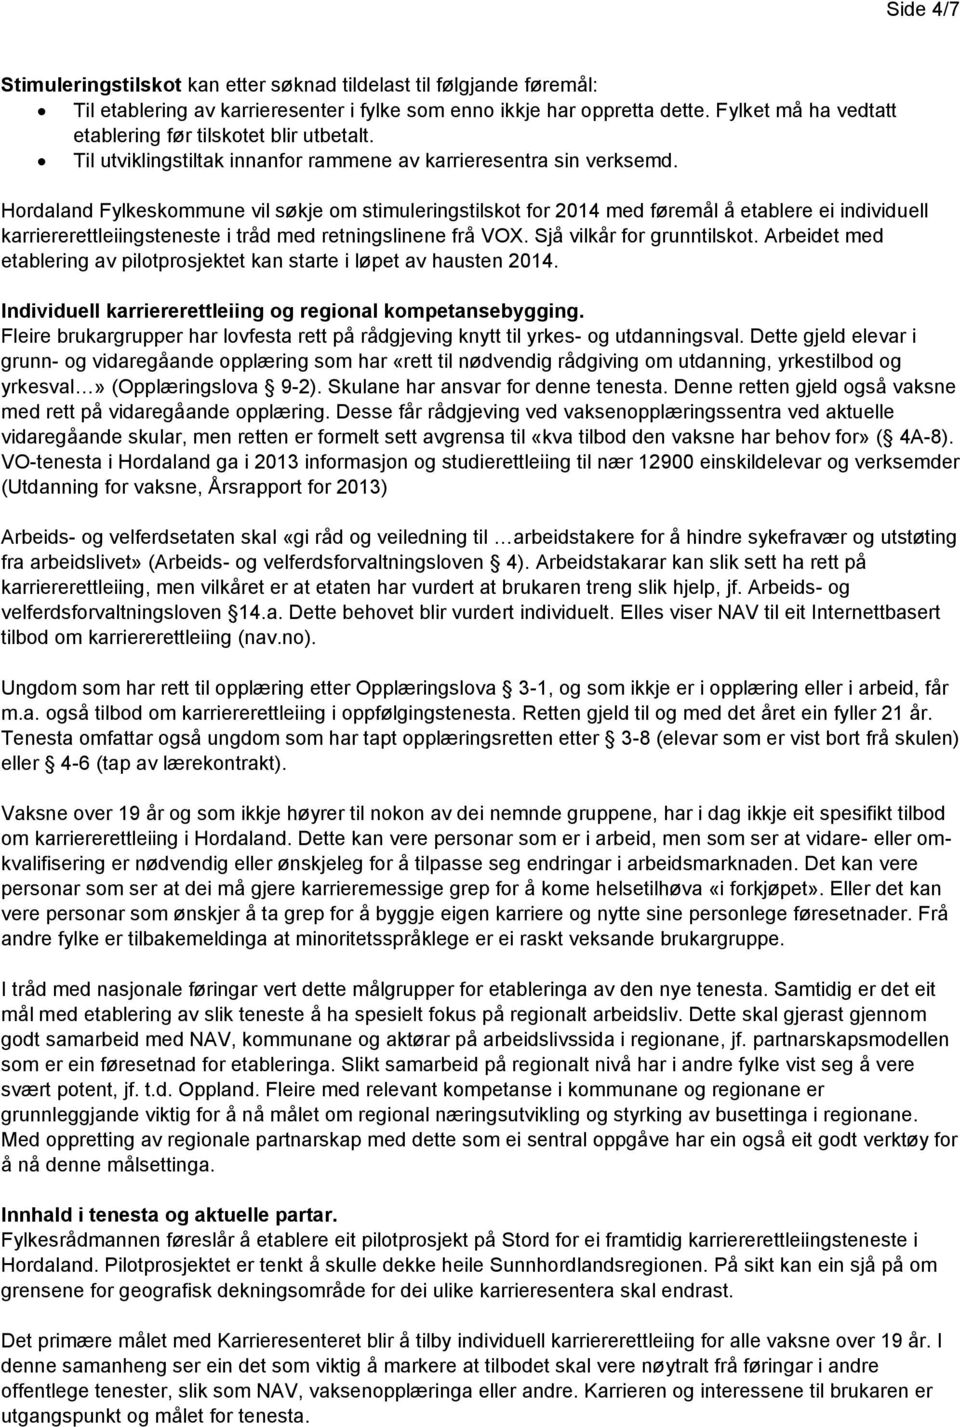 Hordaland Fylkeskommune vil søkje om stimuleringstilskot for 2014 med føremål å etablere ei individuell karriererettleiingsteneste i tråd med retningslinene frå VOX. Sjå vilkår for grunntilskot.